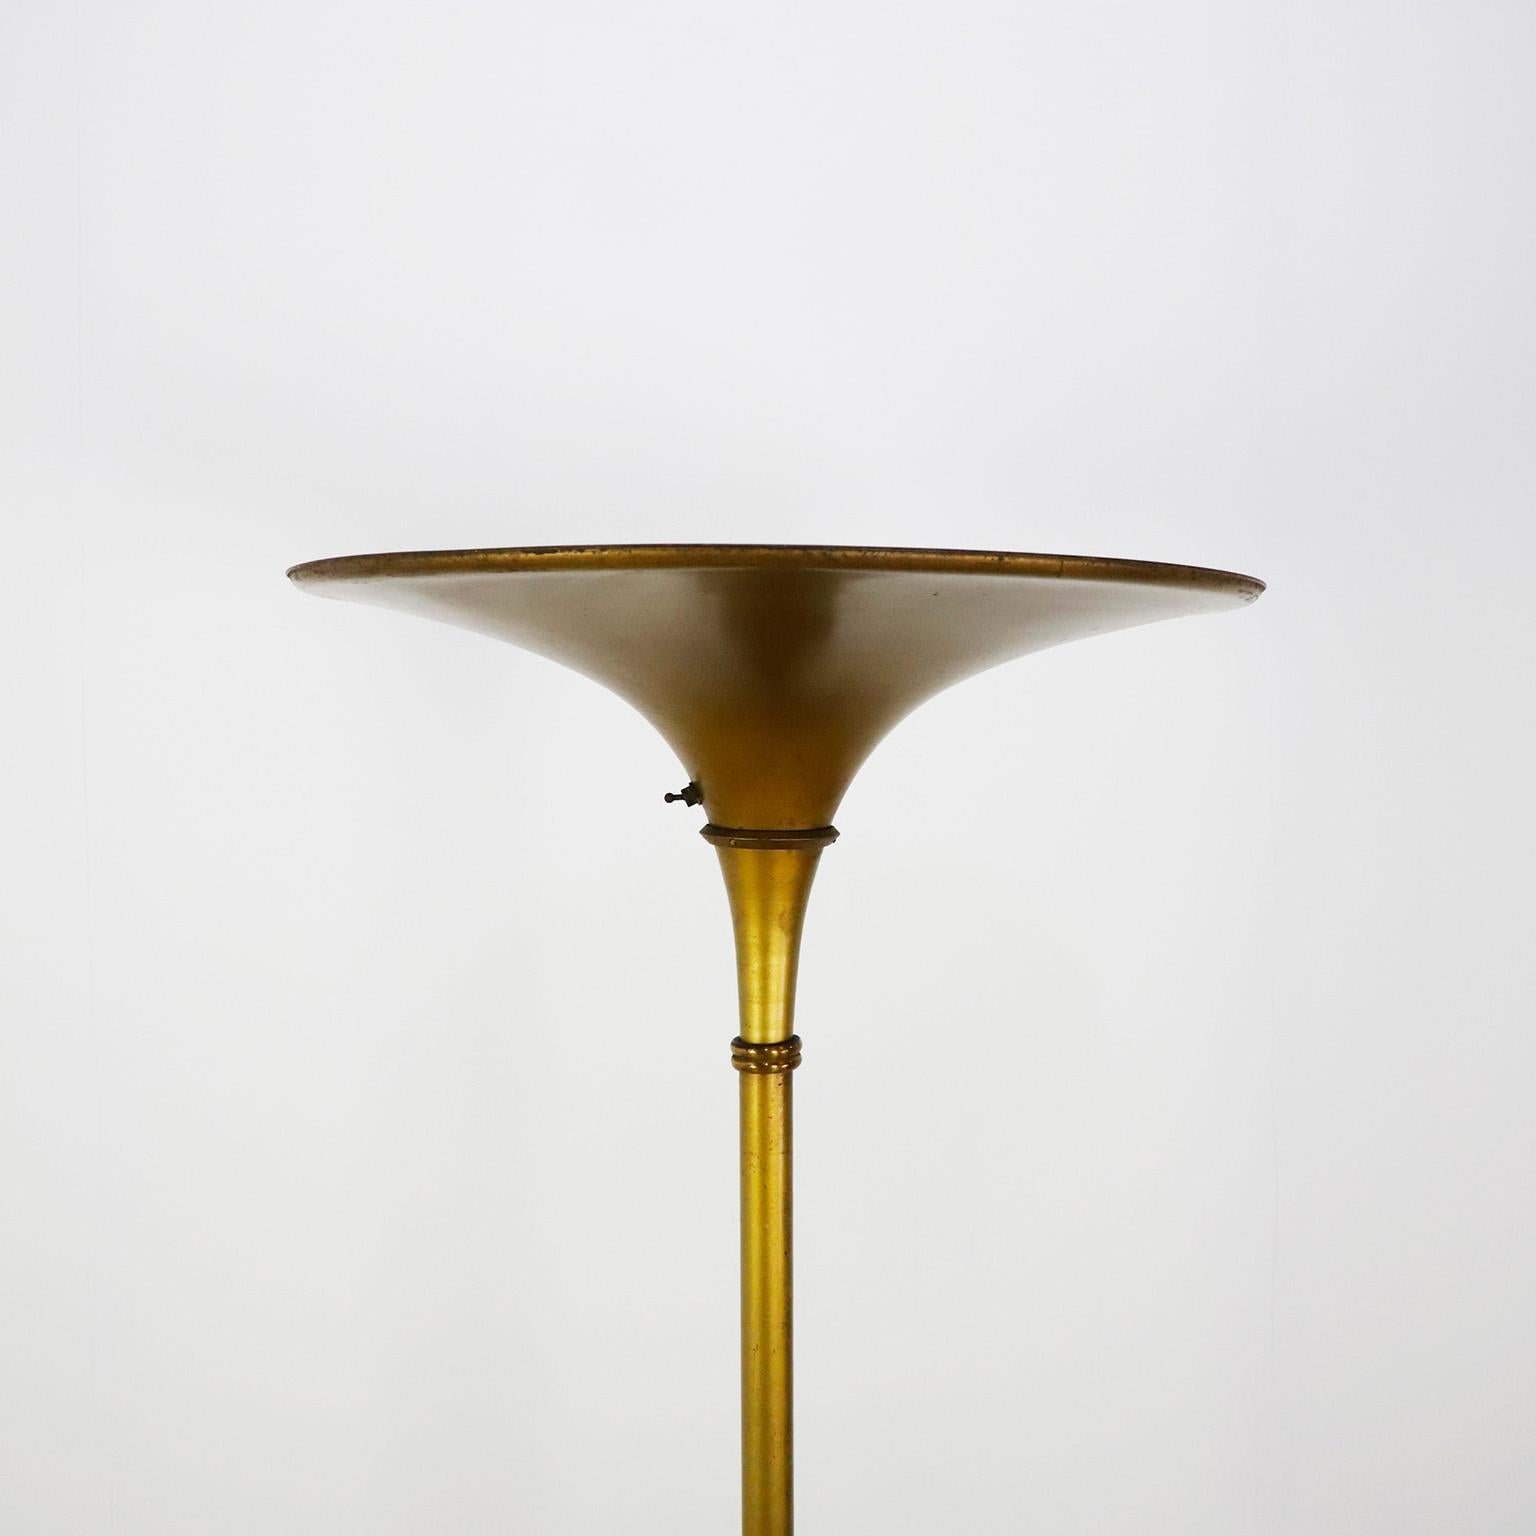 Circa 1940. Nous proposons ce lampadaire torchère Art déco en aluminium ton or.